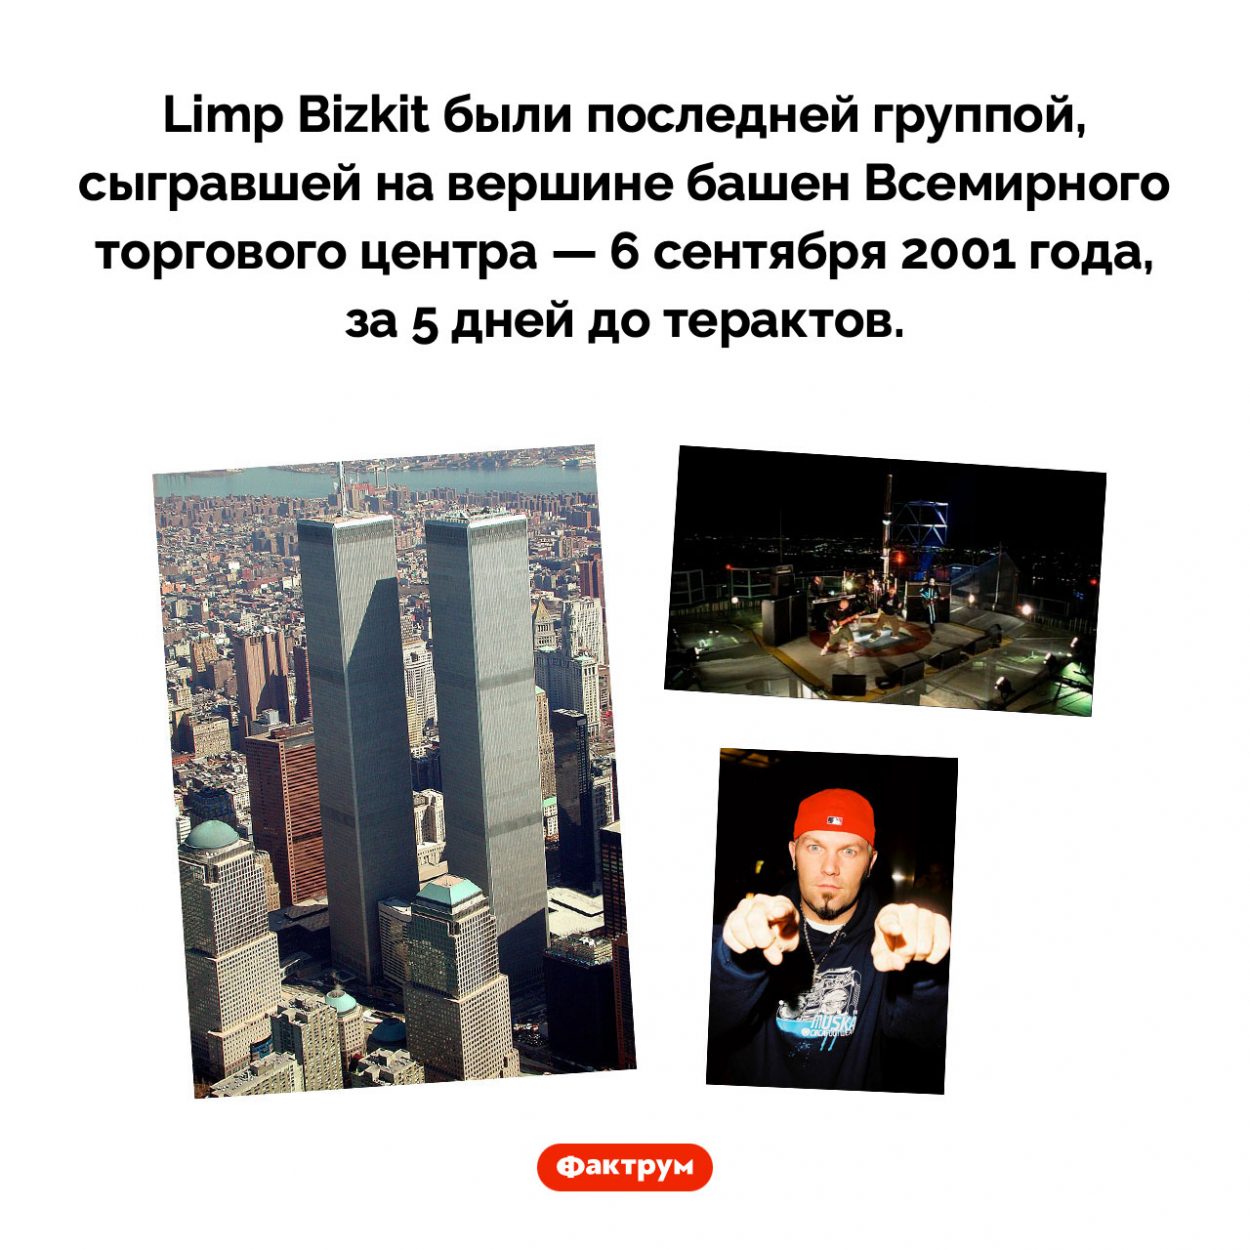 Последняя группа, выступившая во Всемирном торговом центре. Limp Bizkit были последней группой, сыгравшей на вершине башен Всемирного торгового центра — 6 сентября 2001 года, за 5 дней до терактов.